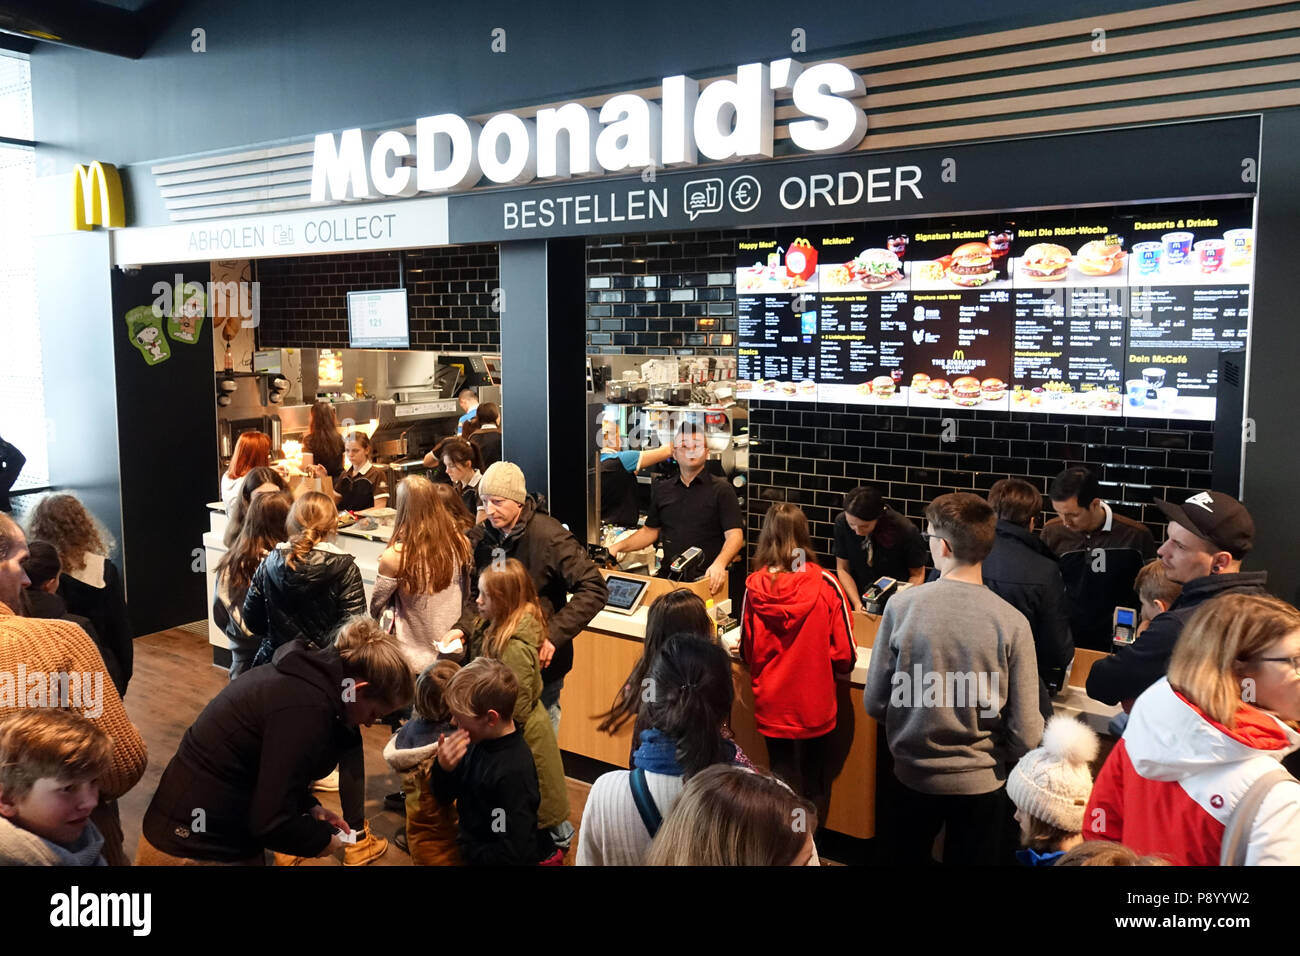 Kurort Altenberg, Allemagne, les gens sont en attente dans un McDonalds à l'ordre du magasin et pick-up counter Banque D'Images